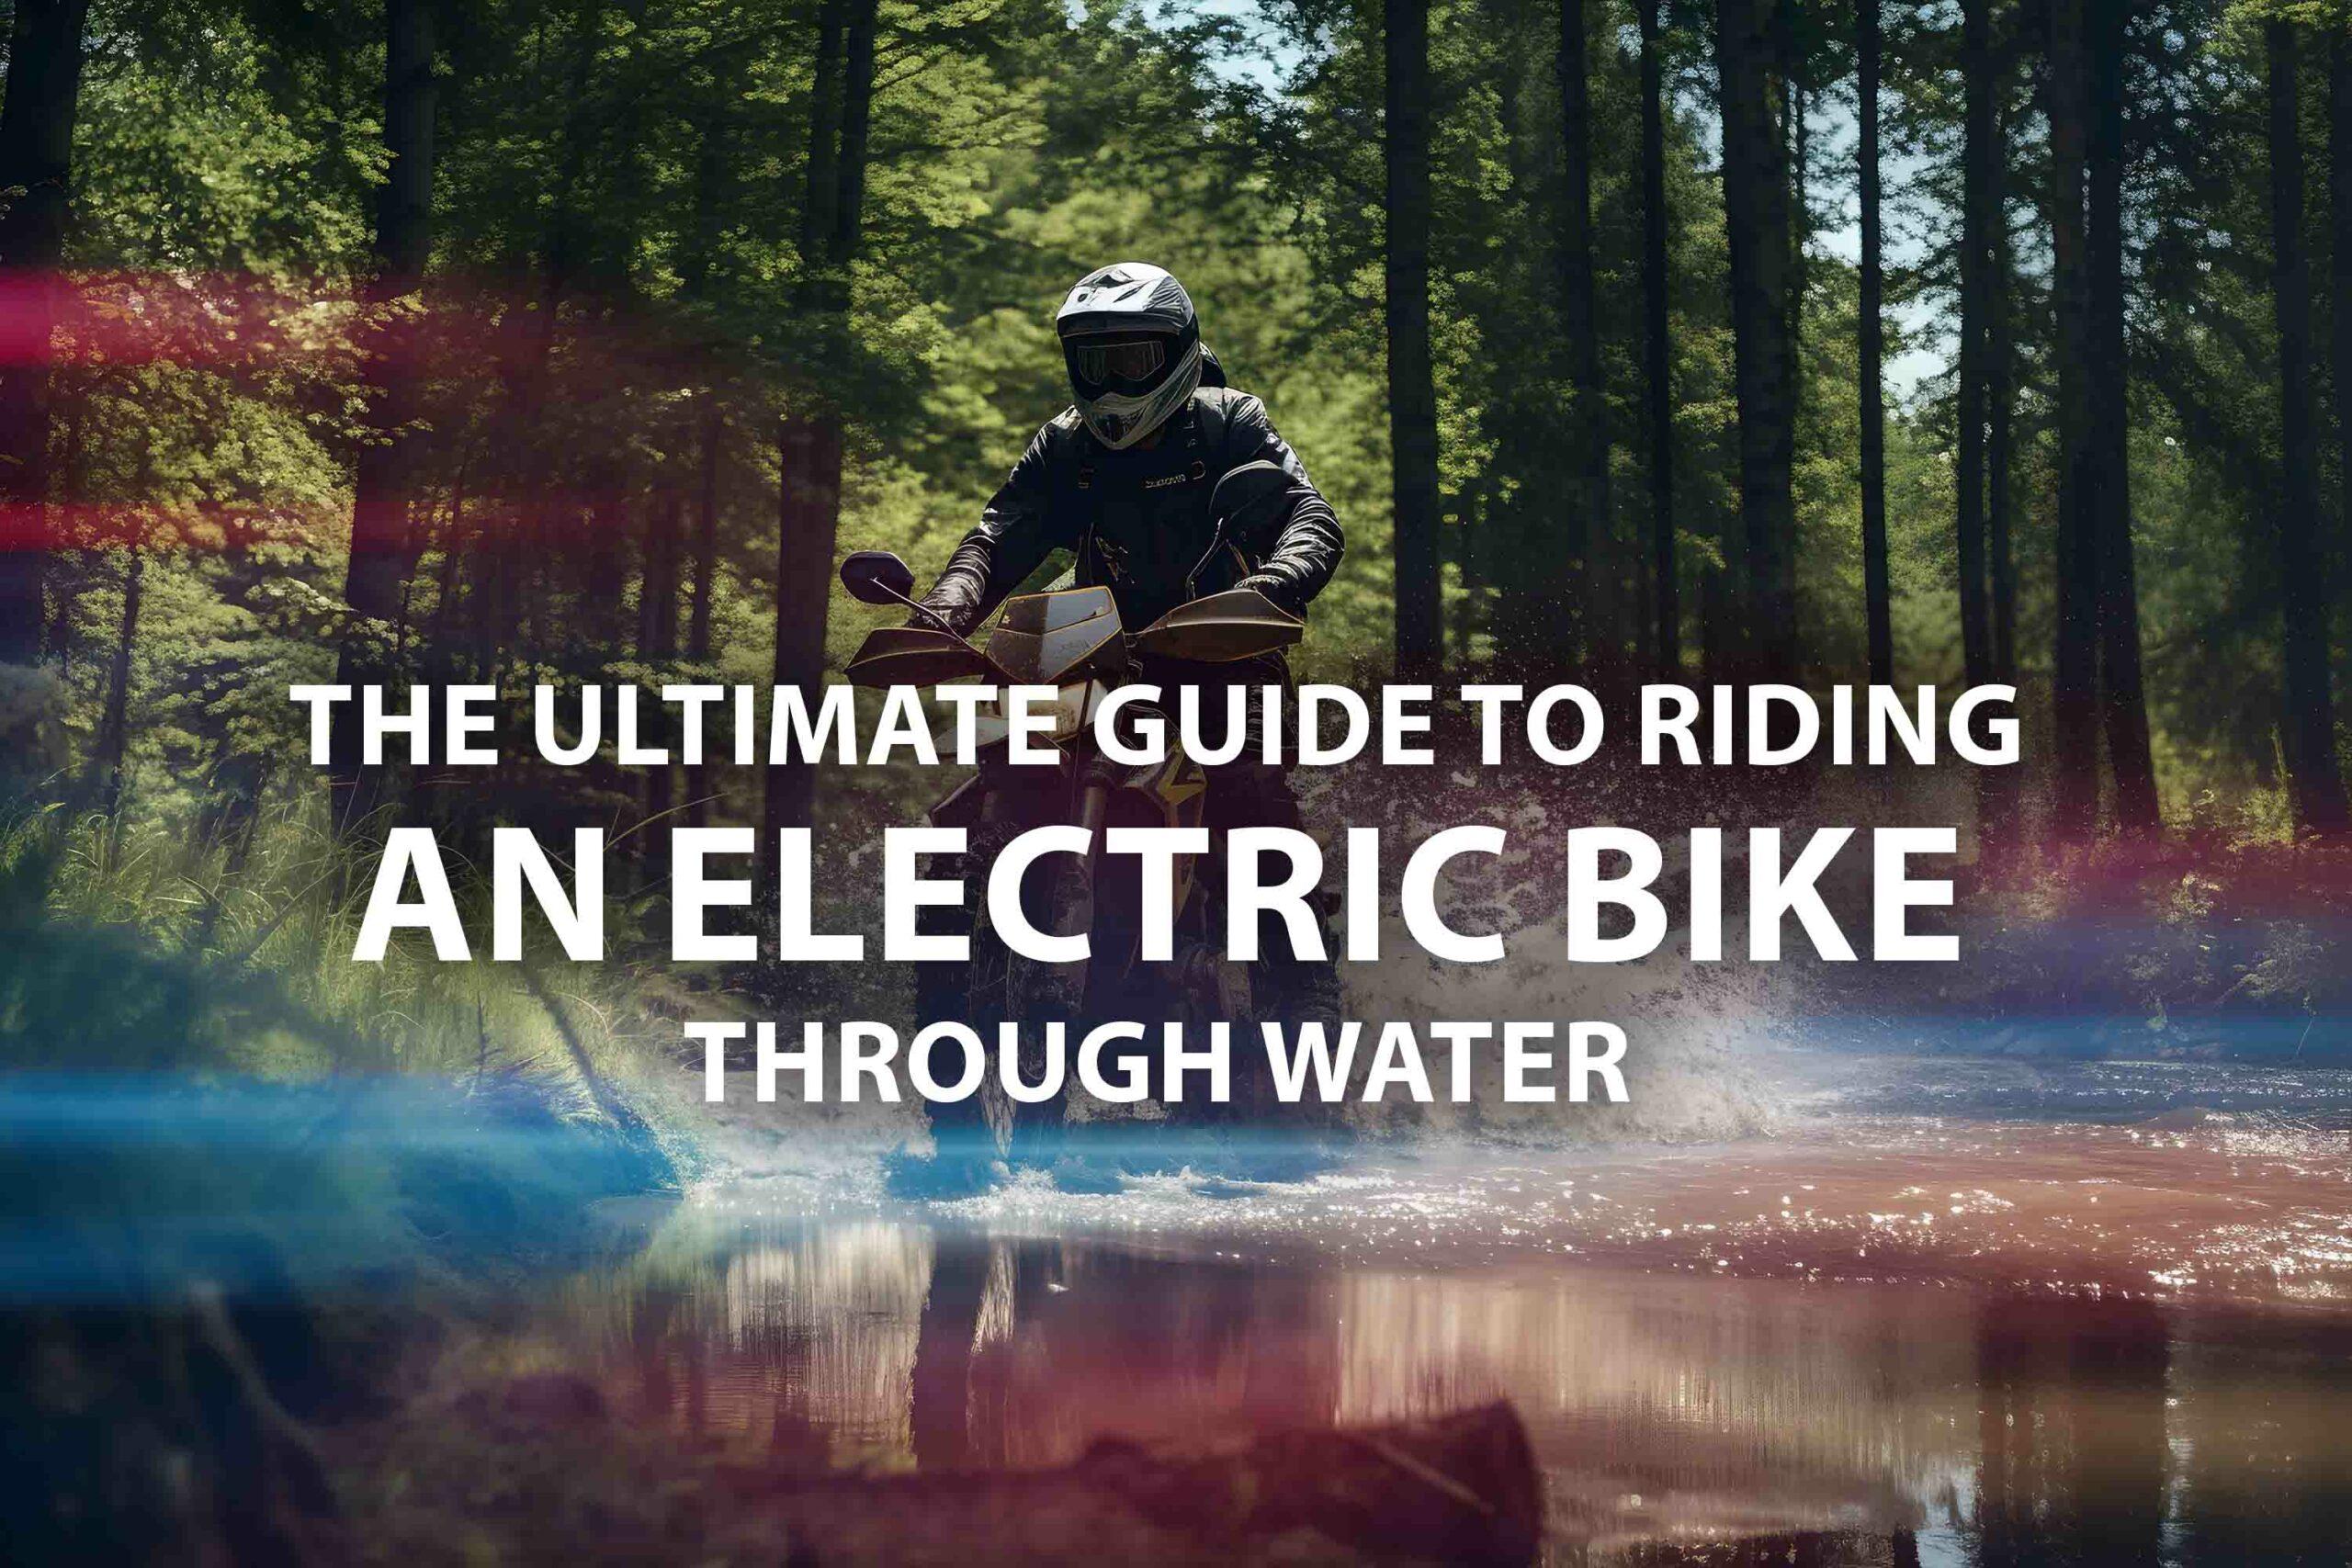 Electric Bike on water